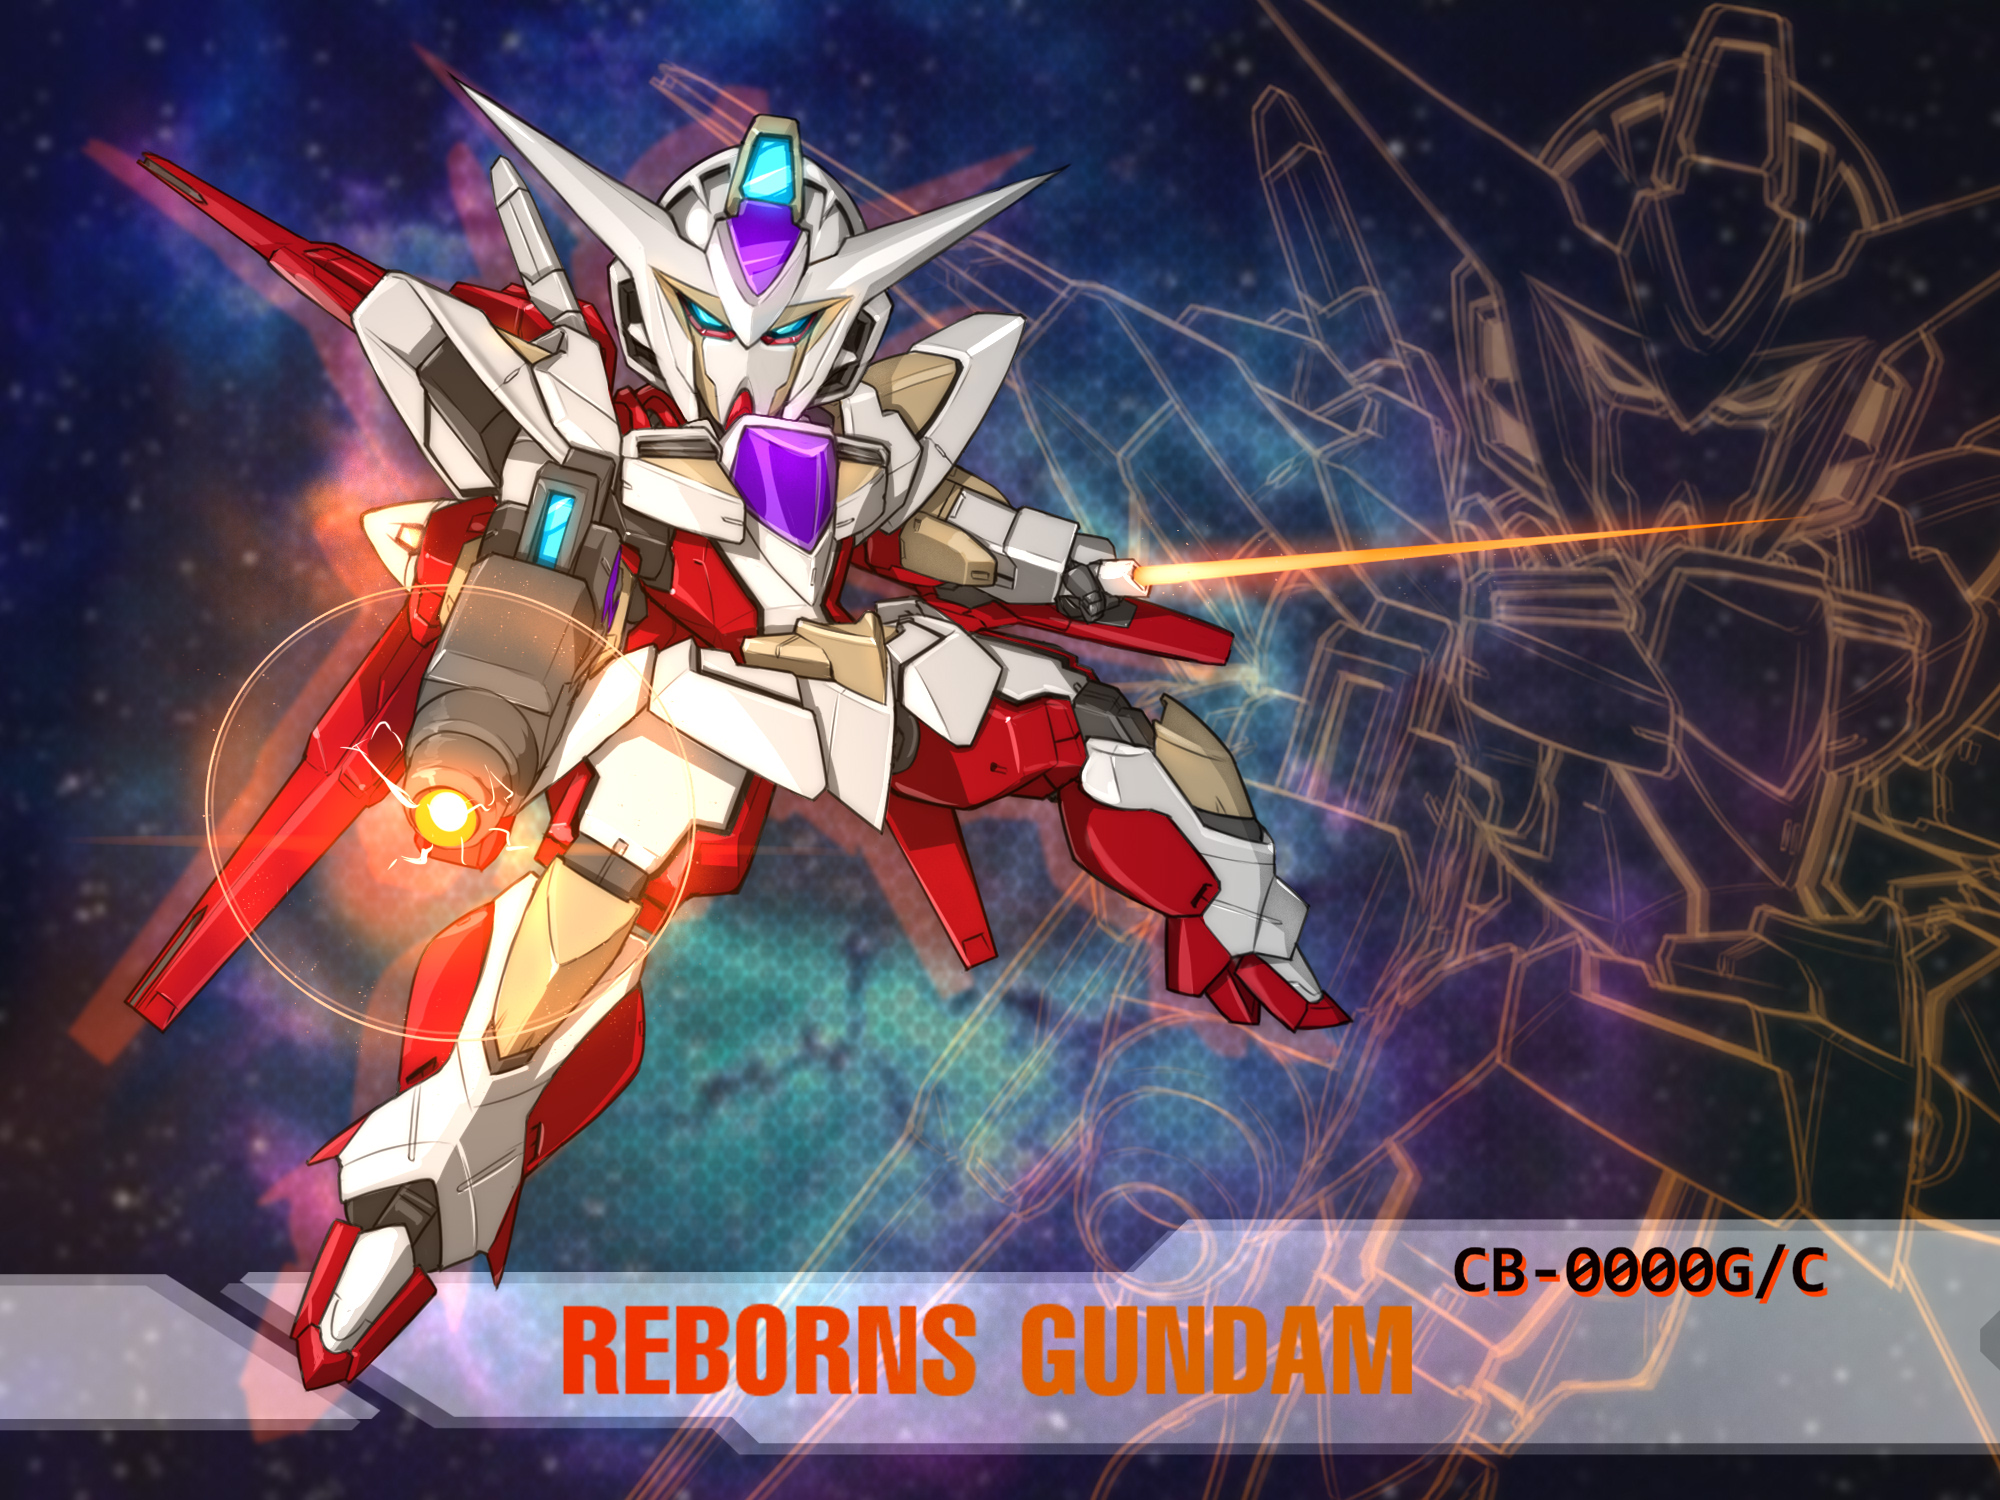 Anime 2000x1500 anime mechs Gundam Super Robot Taisen Mobile Suit Gundam 00 Reborns Gundam artwork digital art fan art